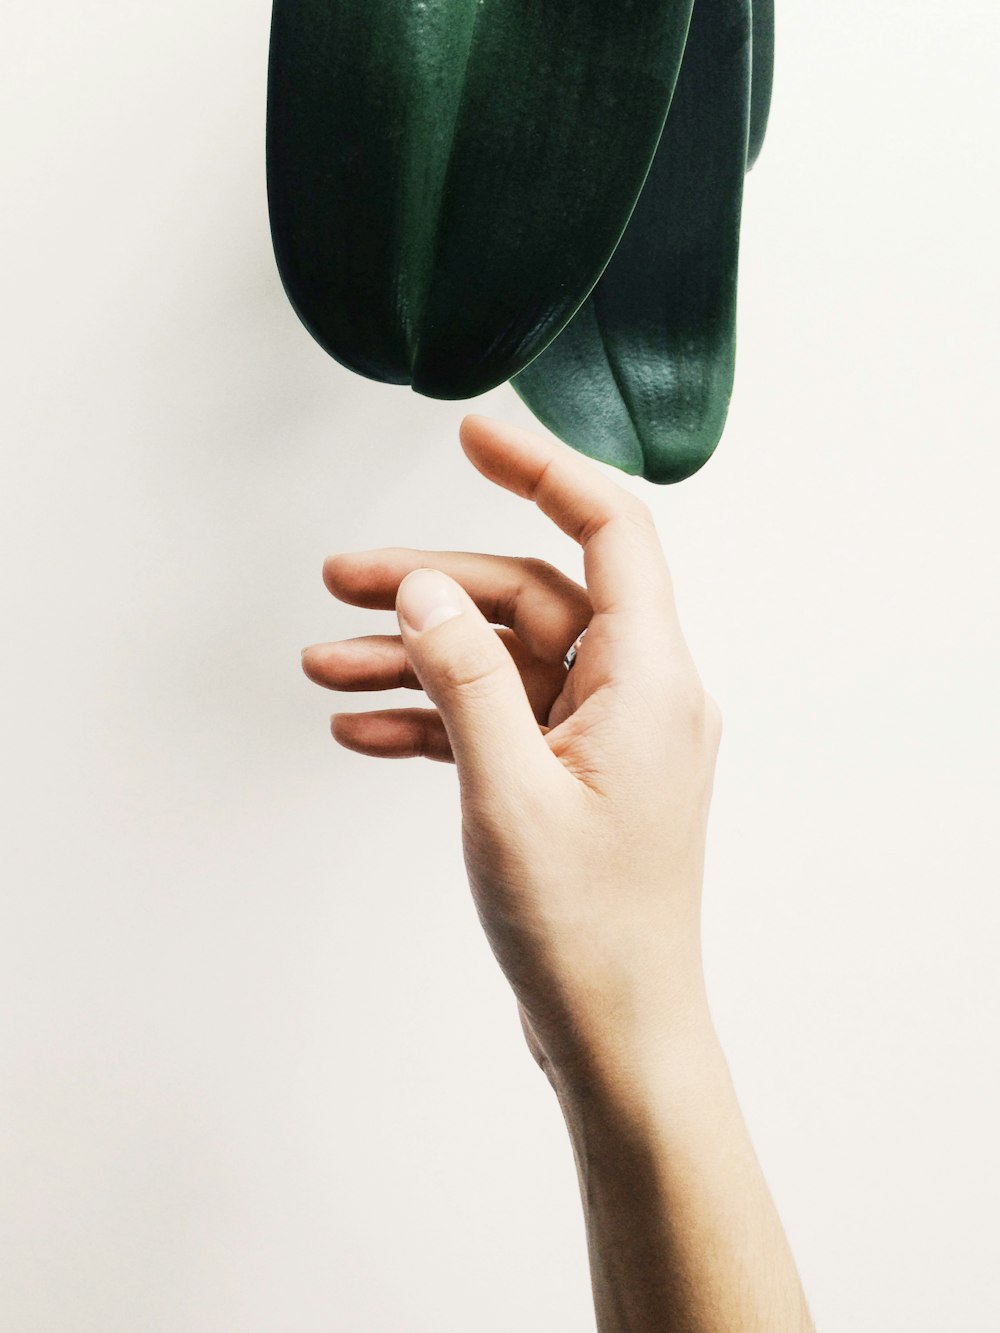 Die Hand einer Person, die nach einer grünen Pflanze greift